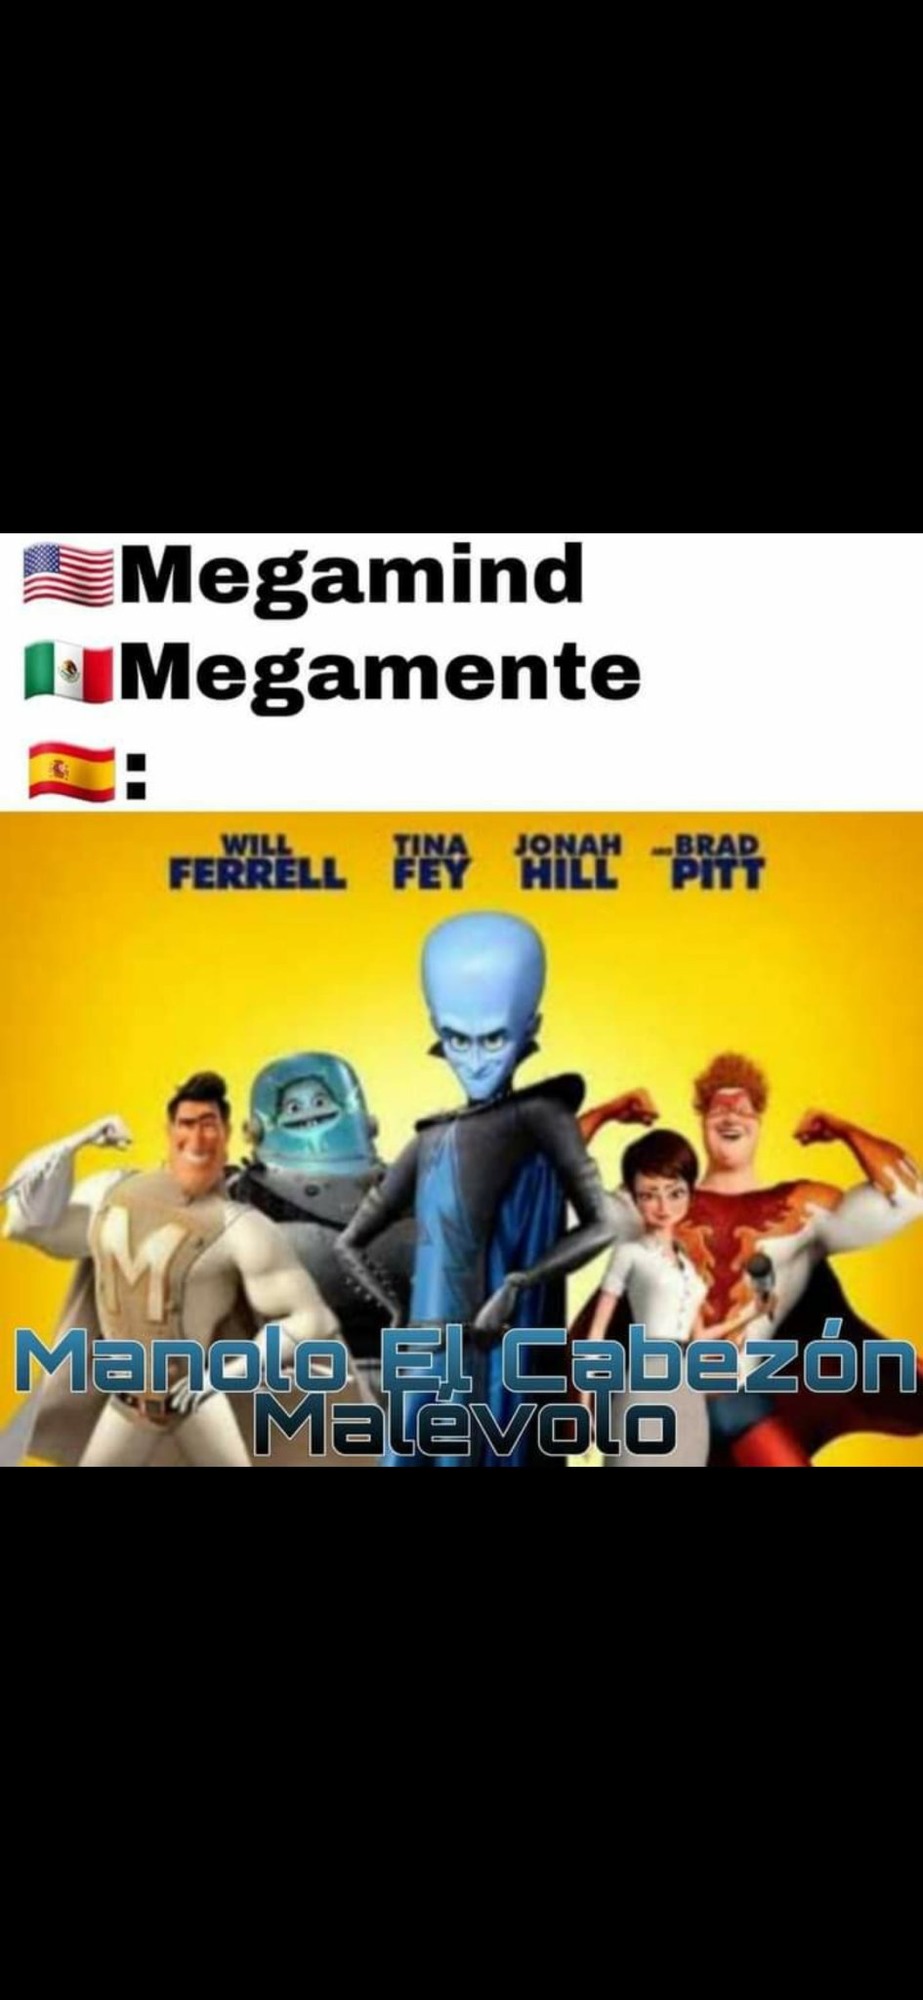 España - meme